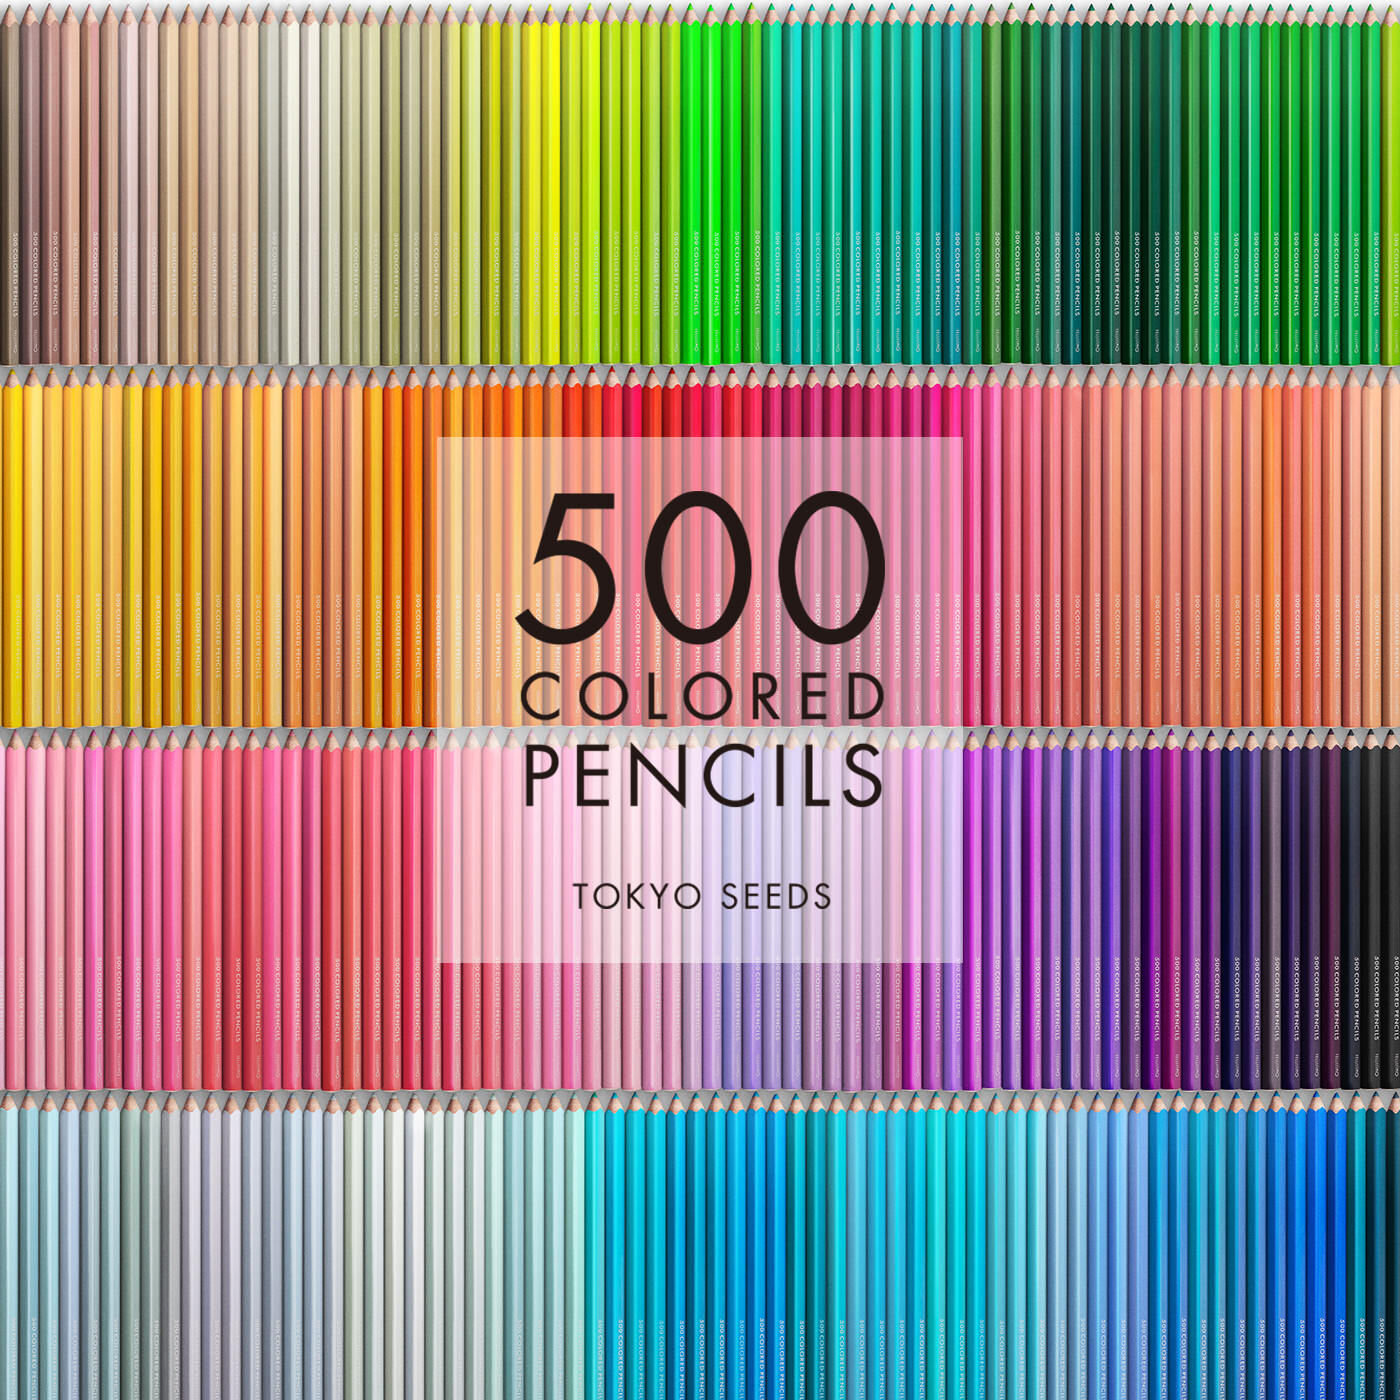 Real Stock|【248/500 BEAN THINKING】500色の色えんぴつ TOKYO SEEDS|1992年、世界初の「500色」という膨大な色数の色えんぴつが誕生して以来、その販売数は発売当初から合わせると、世界55ヵ国10万セット以上。今回、メイド・イン・ジャパンにこだわり、すべてが新しく生まれ変わって登場しました。